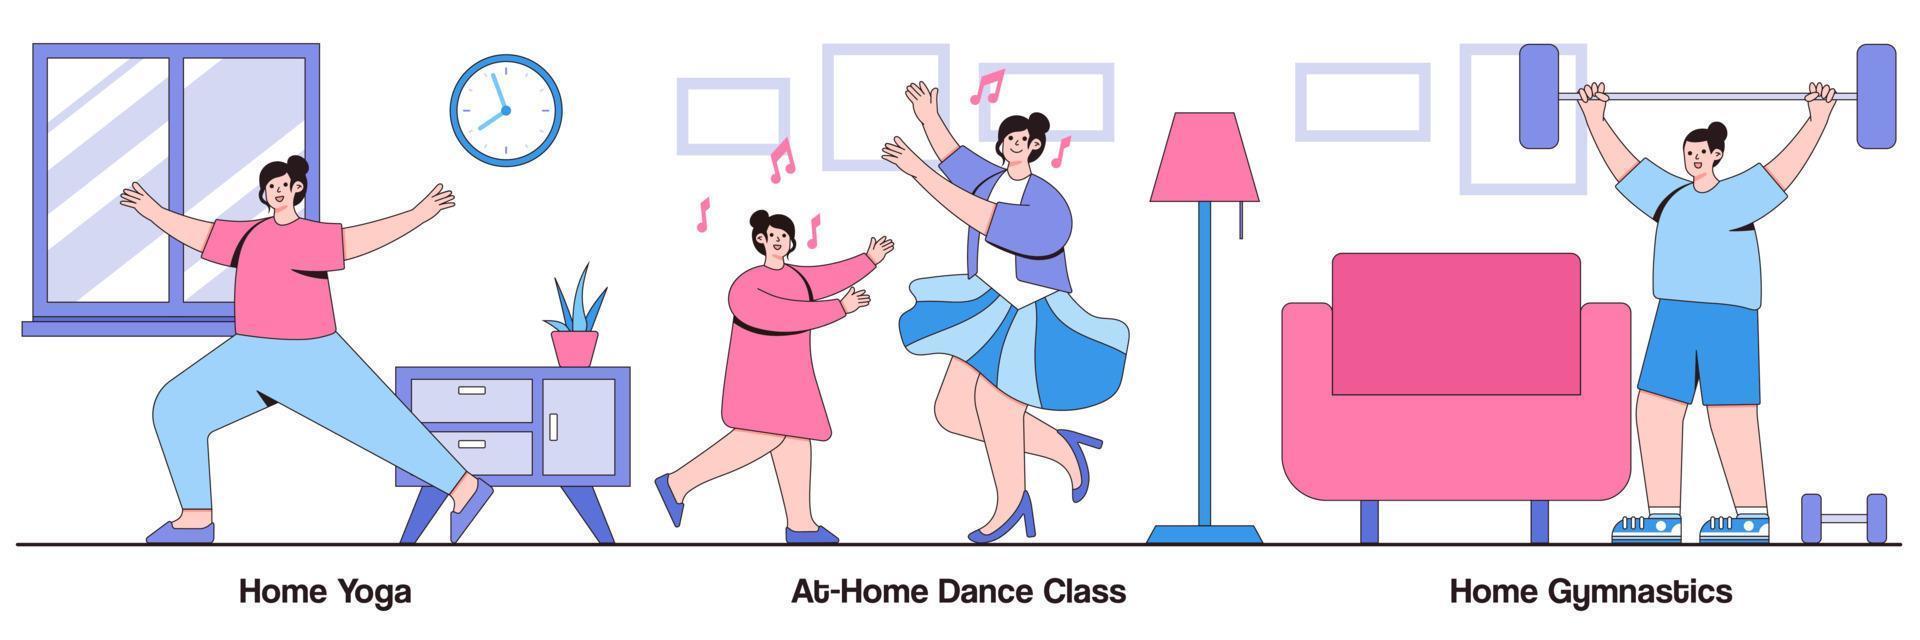 thuisyoga, dansles thuis, thuisgymnastiek met illustratiespakket voor mensenkarakters vector